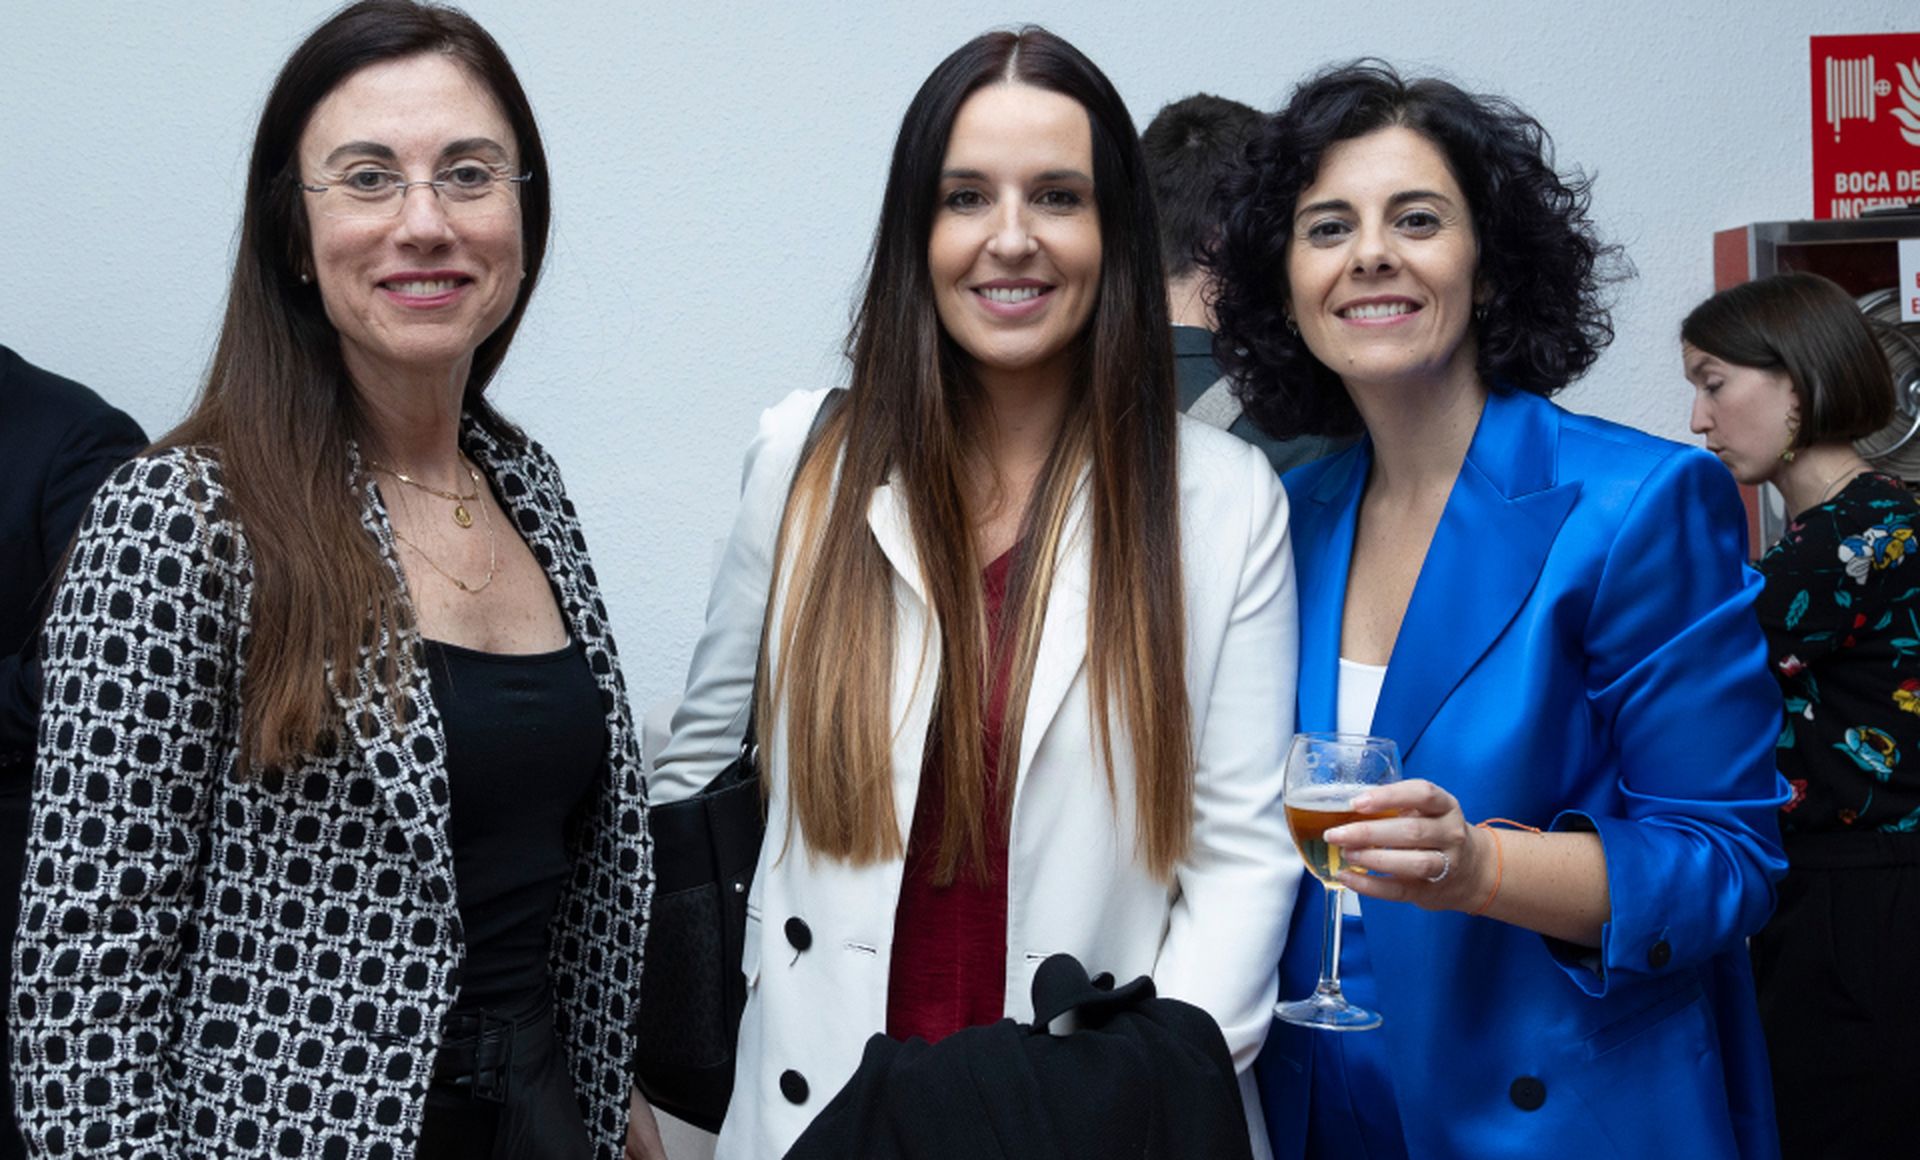 De izquierda a derecha, Lorena Monsalves, directora de Comunicación de Smurfit Kappa; Sara Gutiérrez, responsable de Comunicación de Smurfit Kappa España; y Yovanna Blanco, directora editorial de Business Insider España.